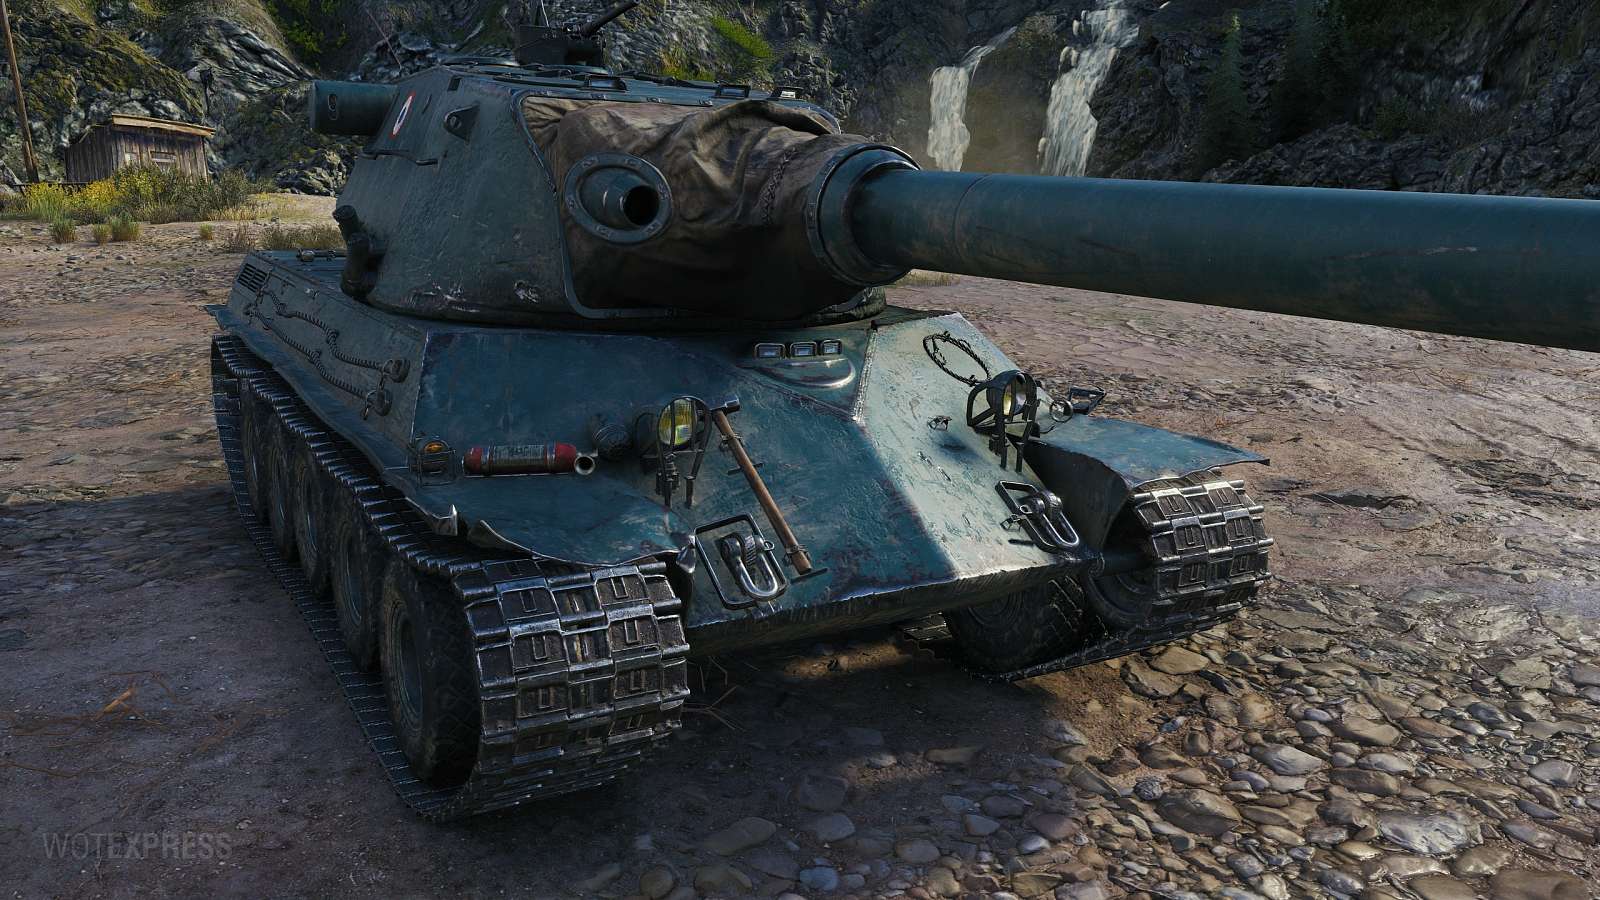 [WoT] Obrázky tanku Lorraine 50 t